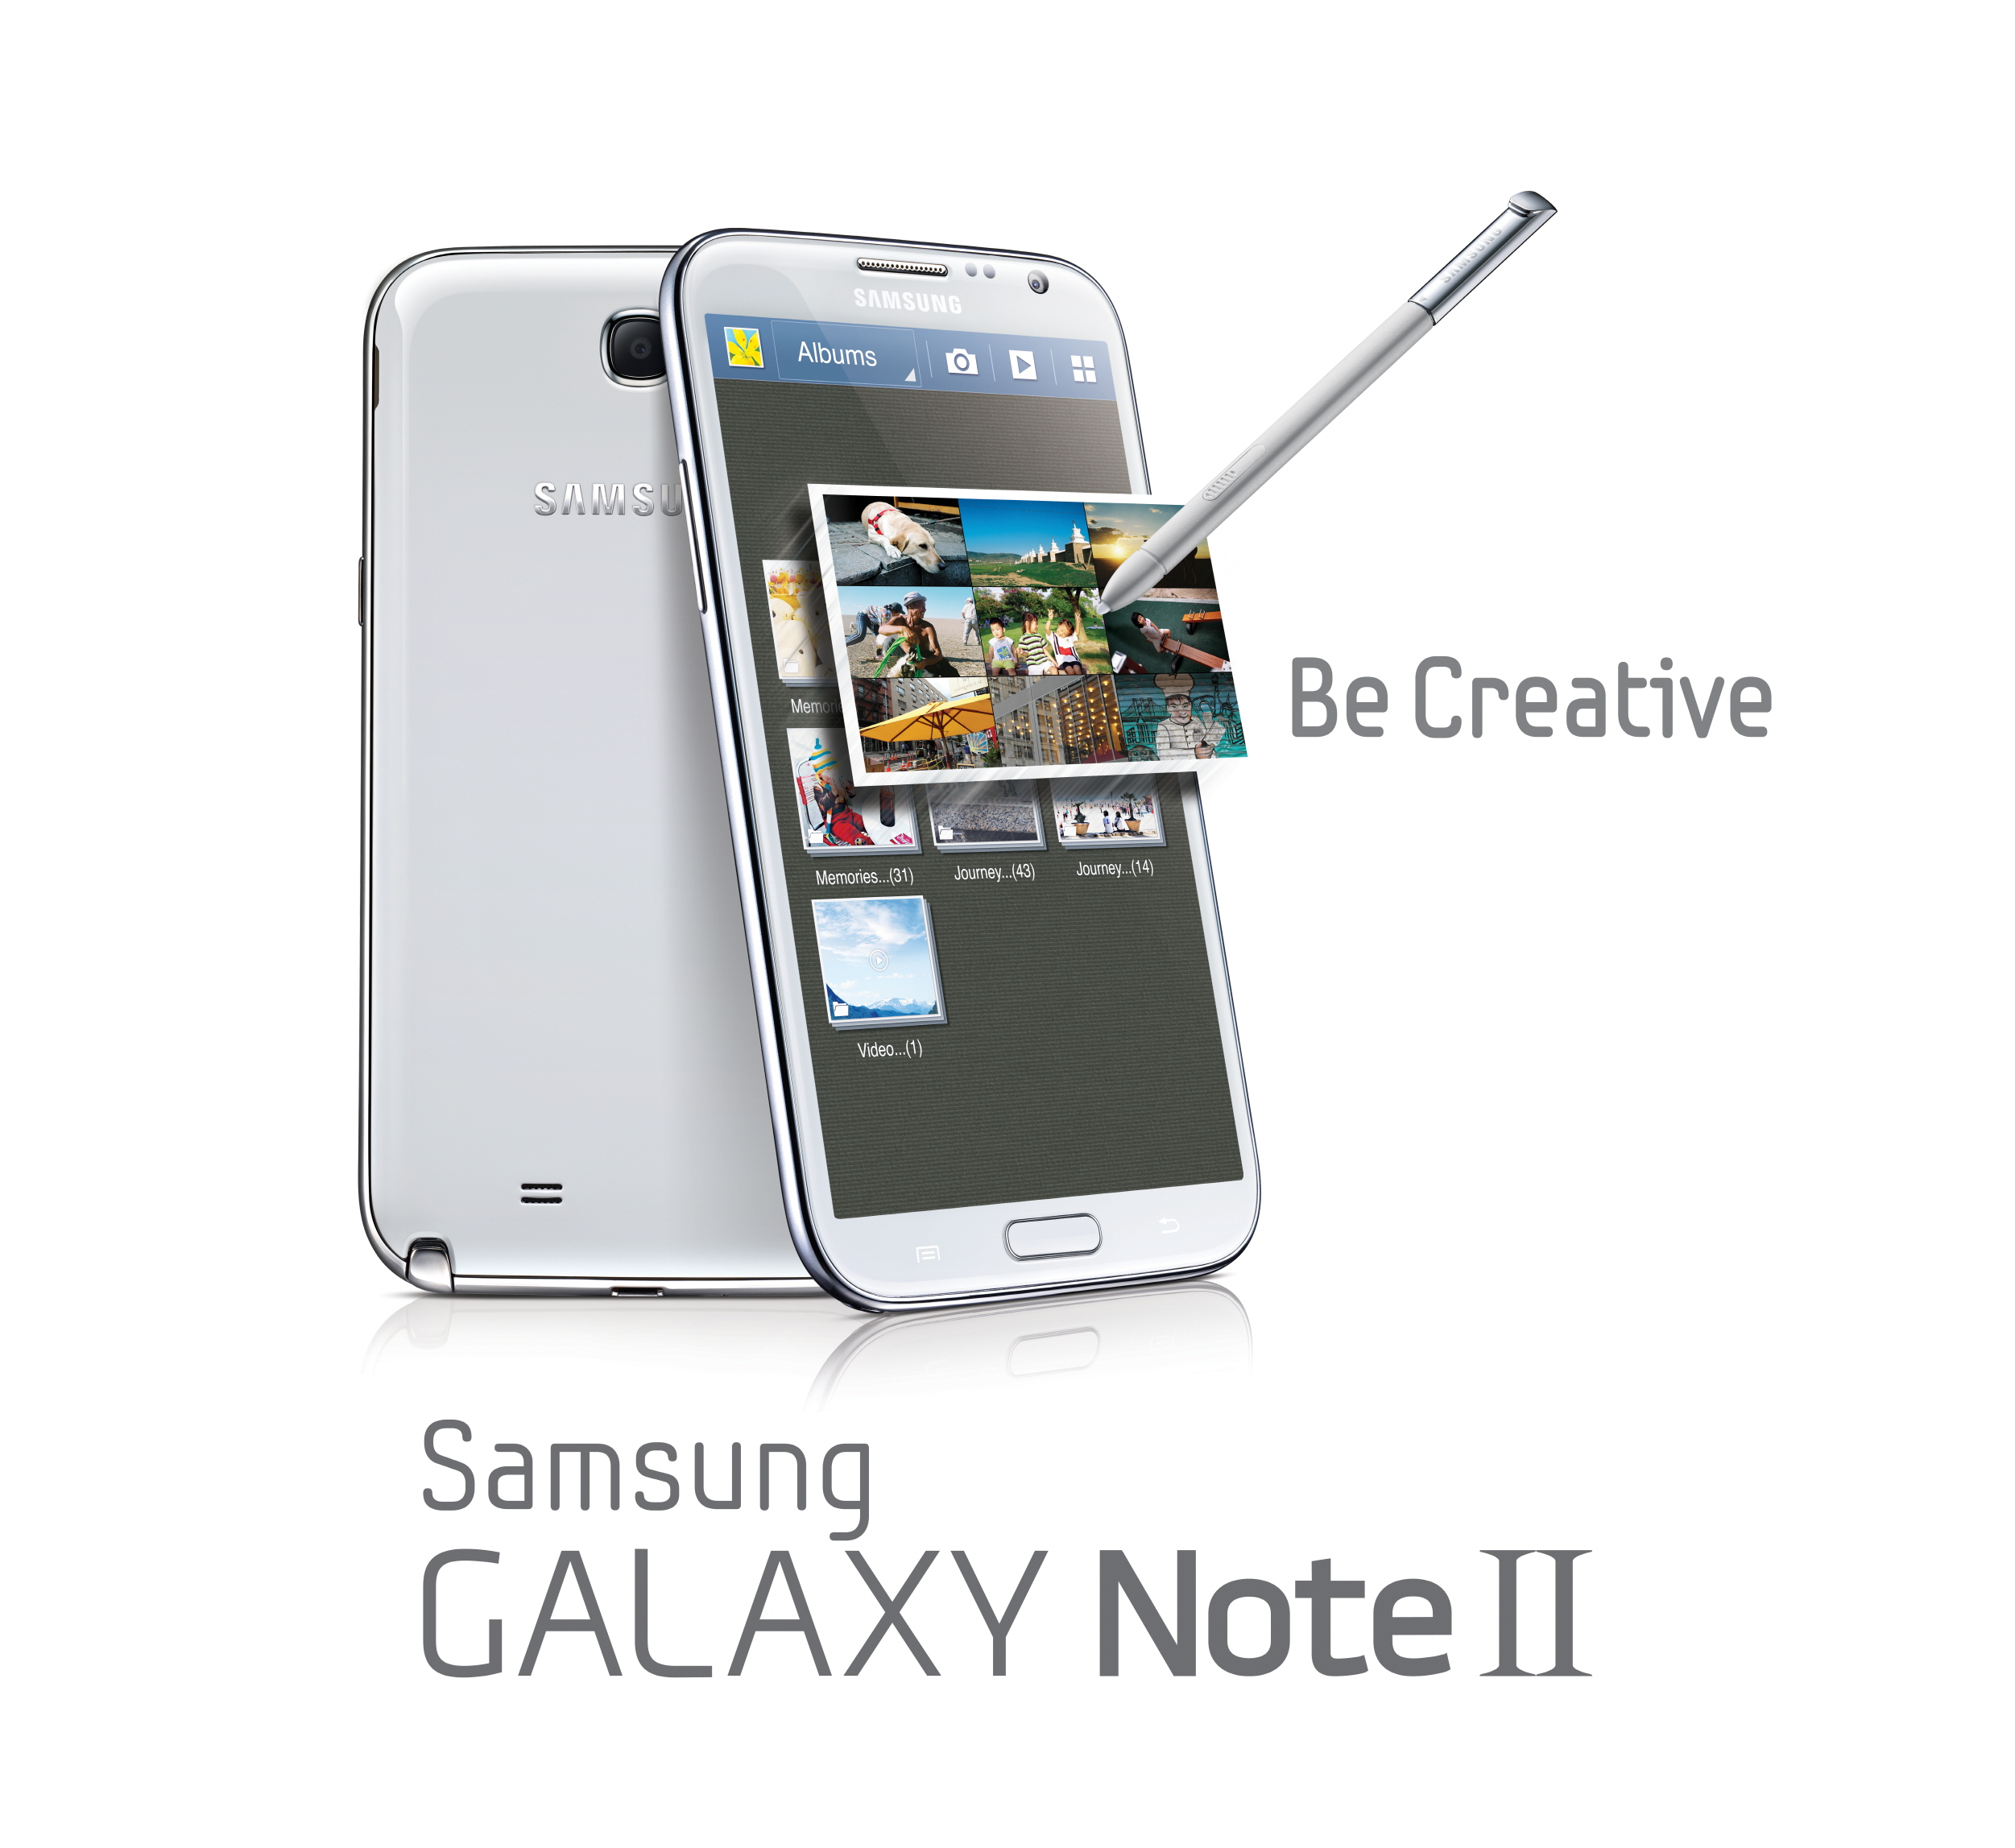 Samsung Galaxy note 2 with Lollipop update